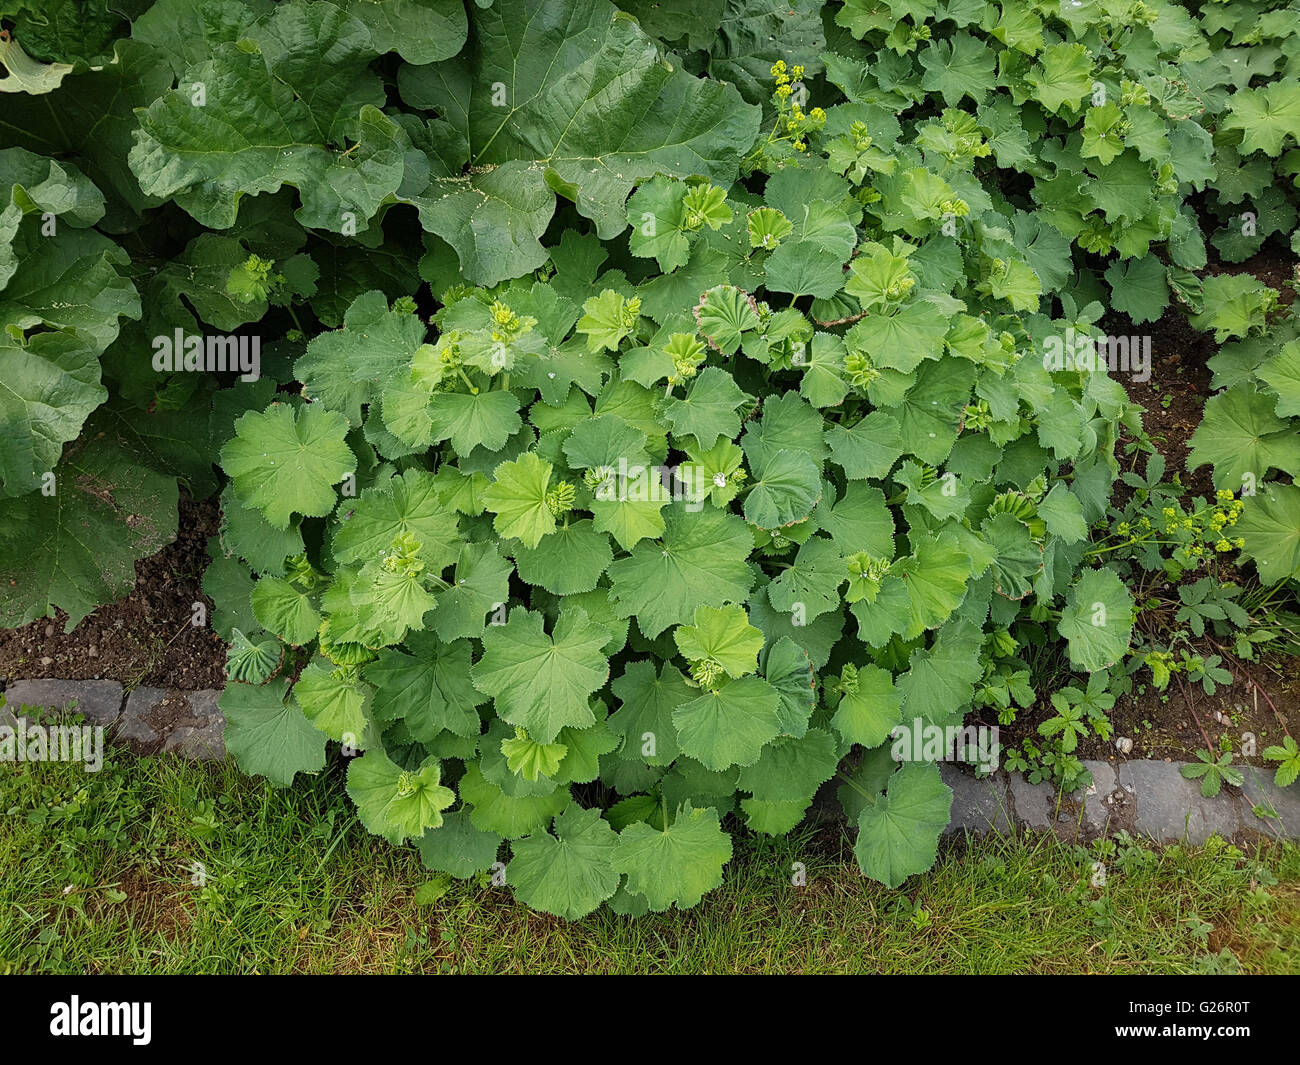 Frauenmantel; Alchemilla mollis, Jungpflanze Stock Photo